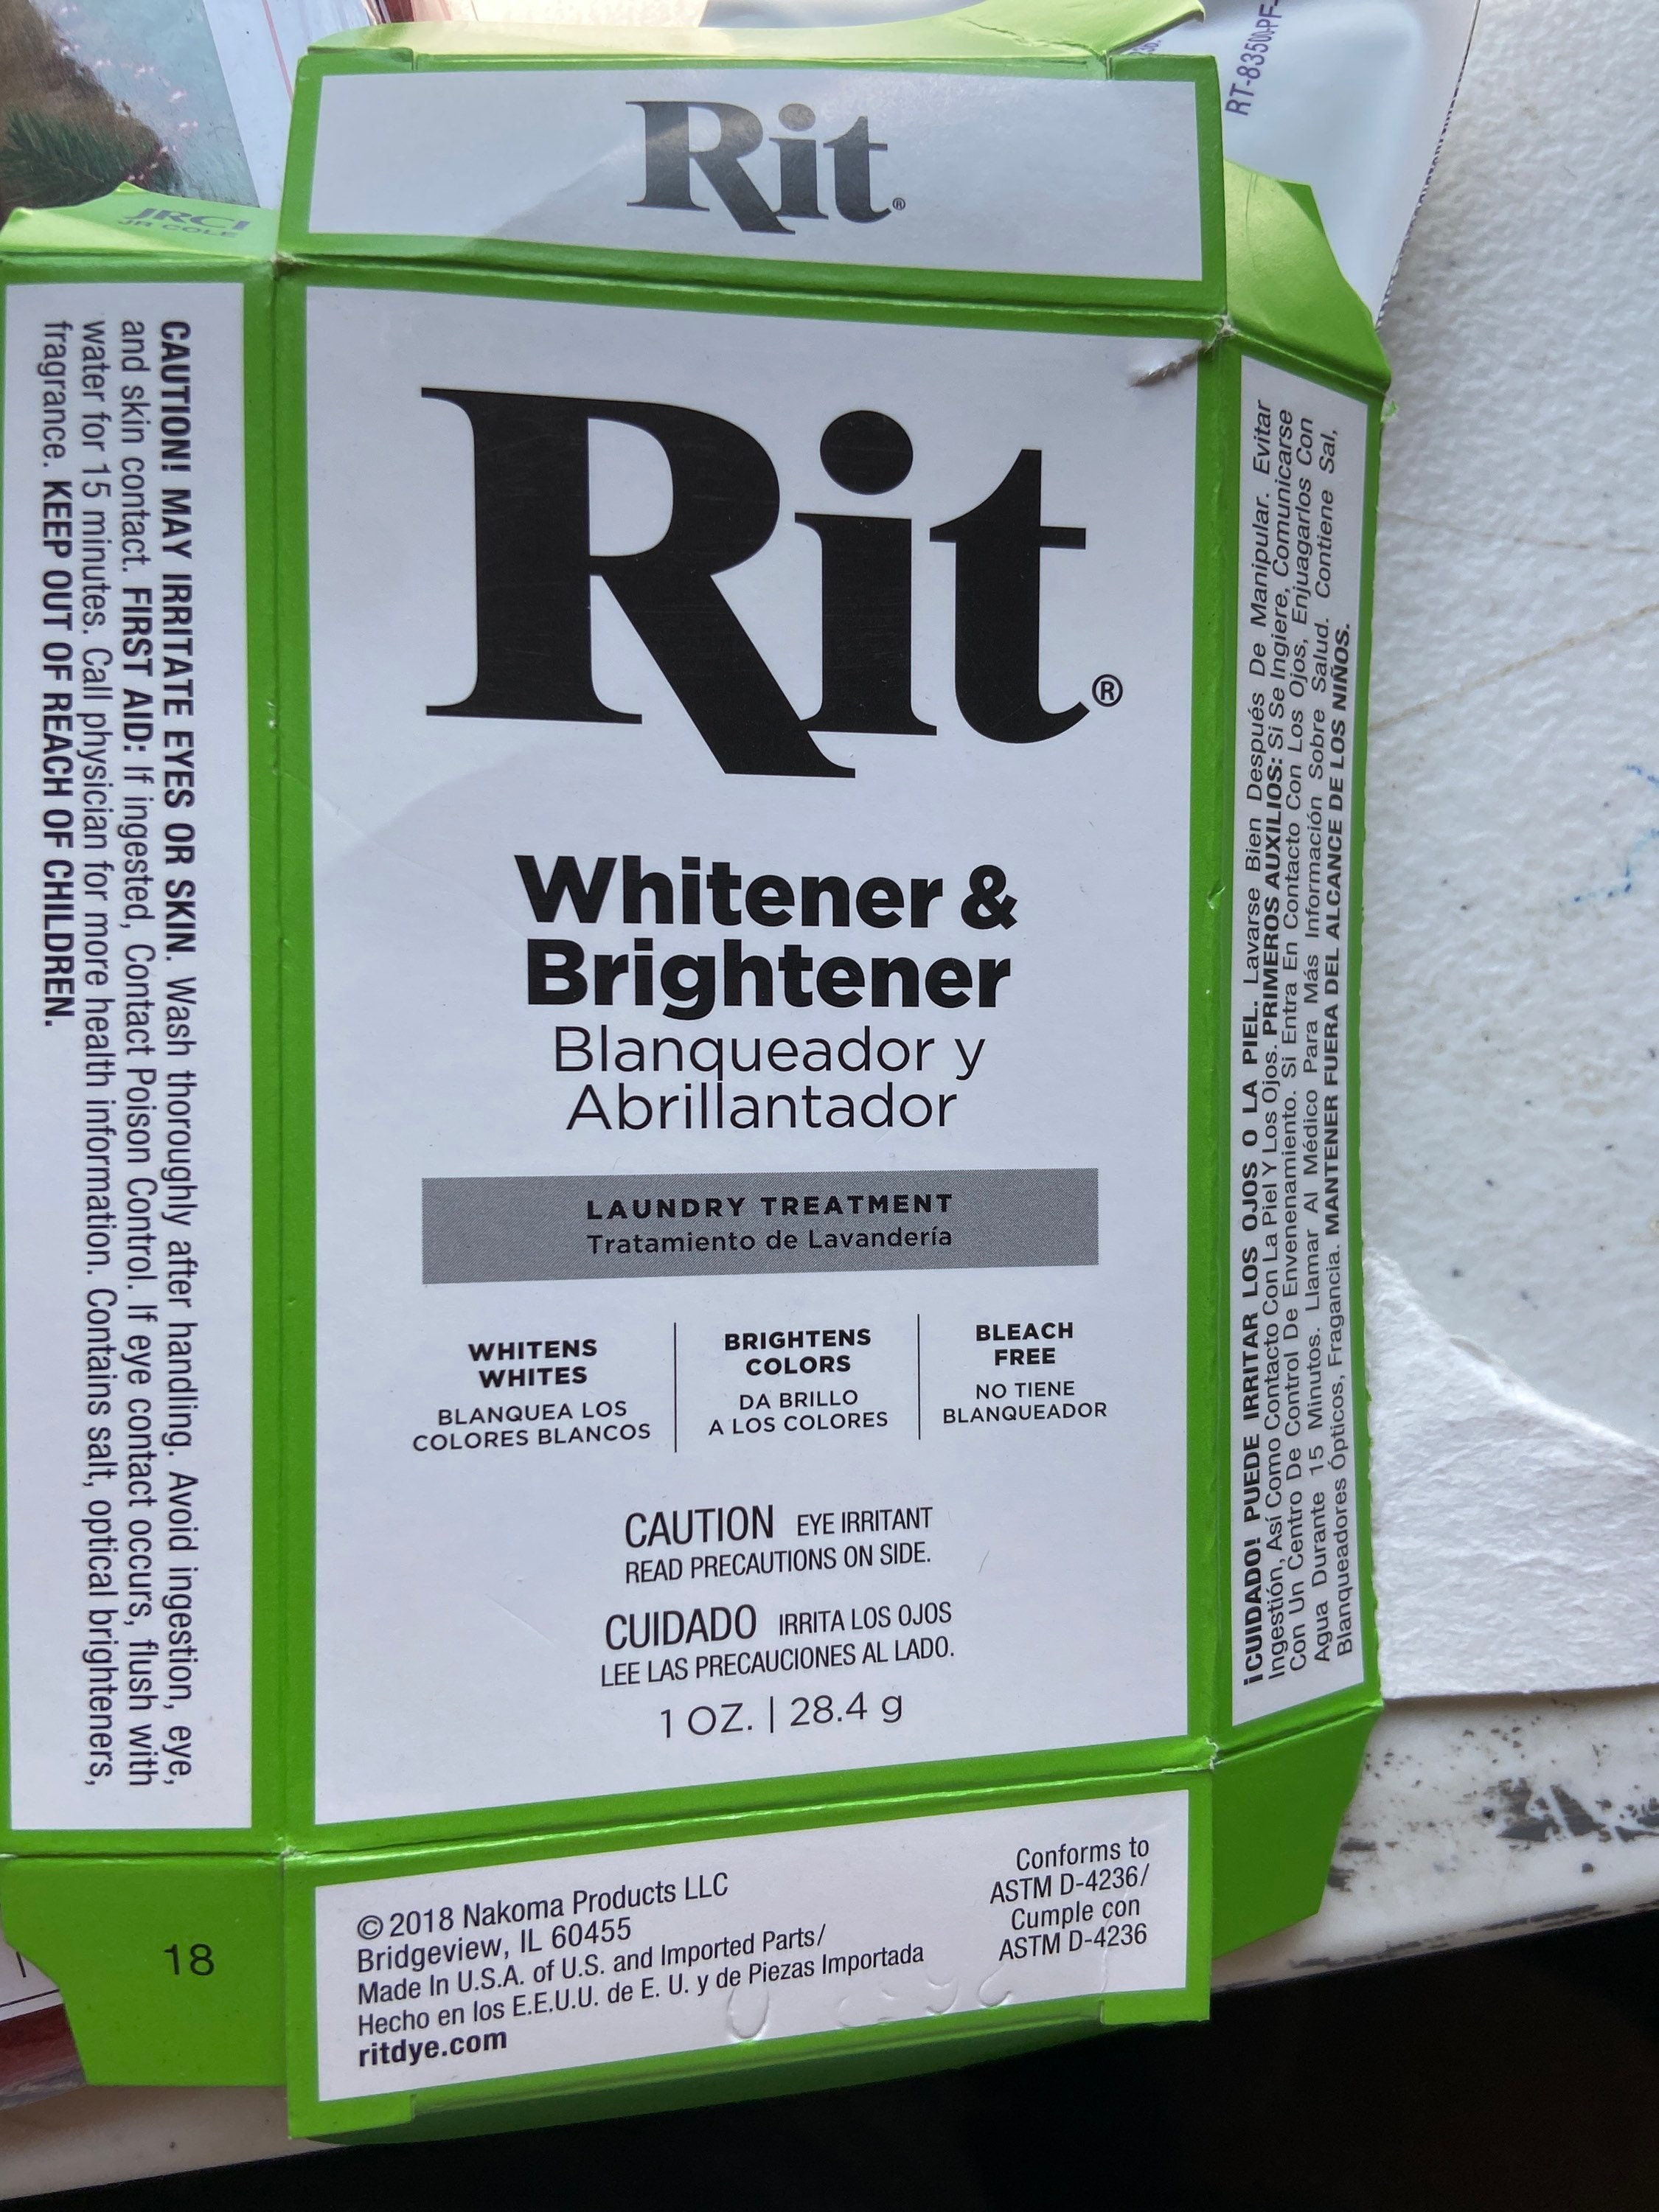 RIT Fabric Whitener and Brightener Powder - 28.4g (1 oz) - Pack of